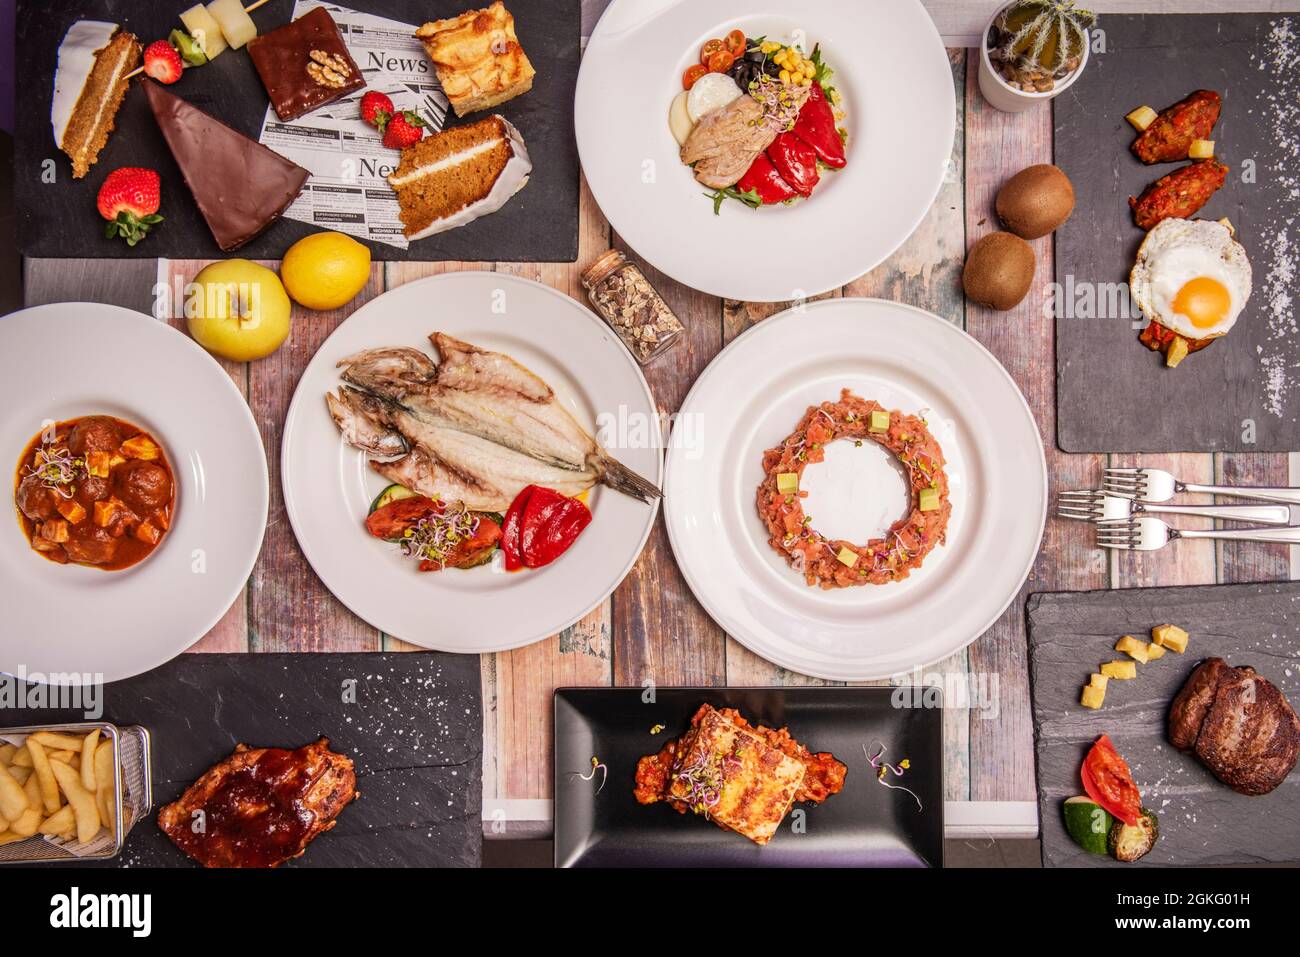 Draufsicht Bild von einem köstlichen Gericht aus spanischer Küche, gegrillte Goldbrasse, Schweinebacke, Hähnchenflügel mit Spiegelei, Lachstartare, Bauchsalat und Stockfoto